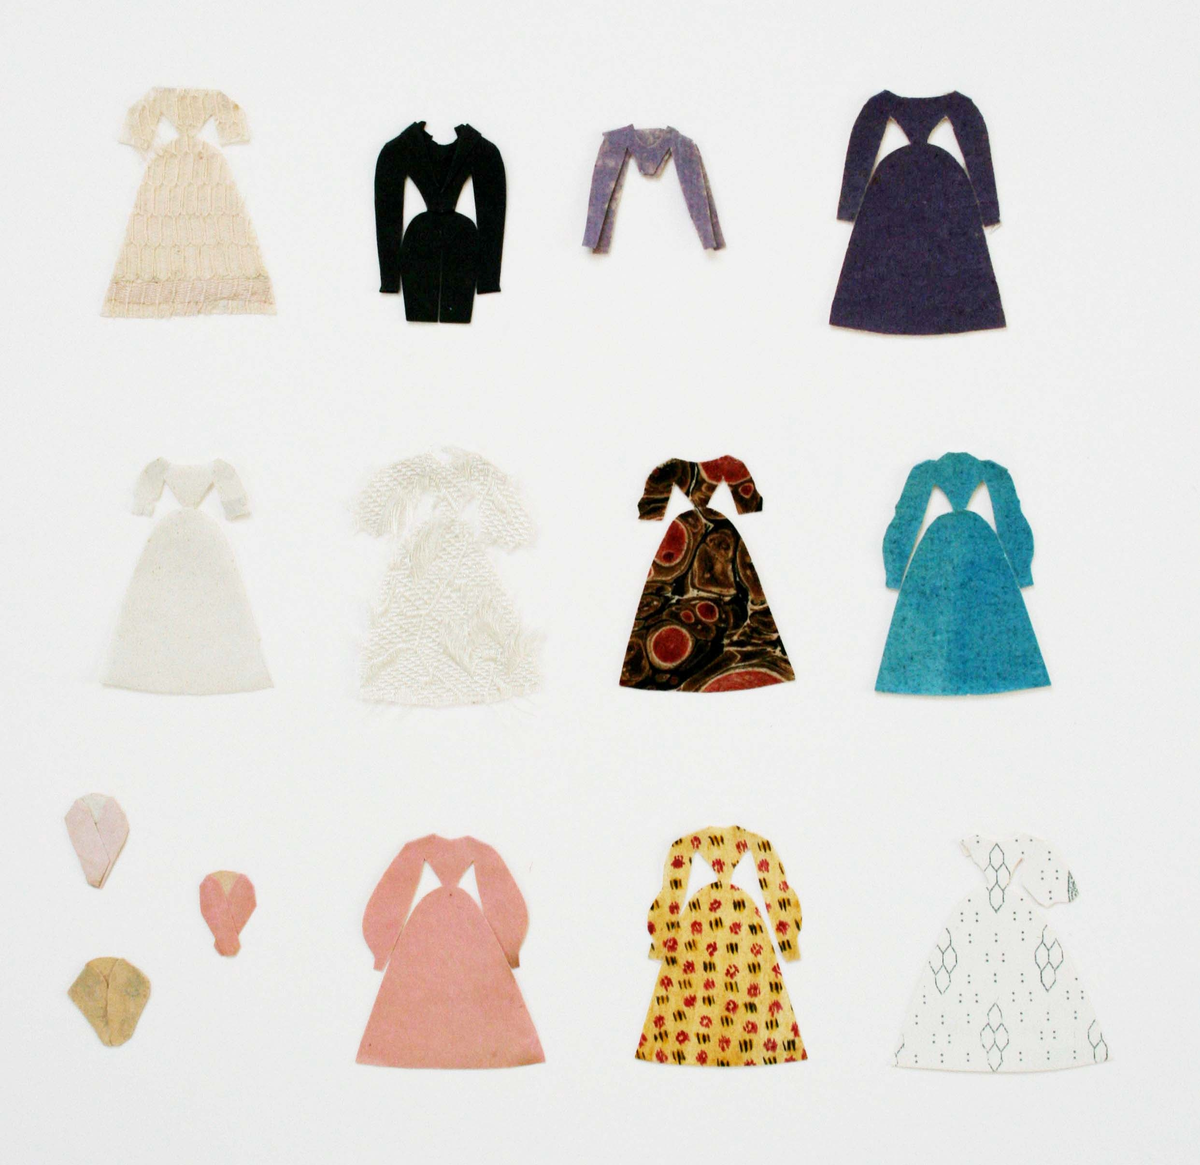 Dockor med små huvuden. Kläder klippta av olika slags enfärgade och mönstrade papper (tryckta, handmålade). Kläderna har smala midjor, vida kjolar och ärmar.

Herrkläder: kostymer, rockar.

Damkläder: klänningar, blusar, kjolar, sjalar och halsband. I cellofanmappar.

1. 3 män, 2 kvinnor, påklädda +1 rock, 14 klänningar, 1 kjol, 1 förkläde, 4 sjalar och 2 halsband.

2. 34 klänningar.

3. 10 klänningar, 1 blus, 3 sjalar.

4. 42 klänningar, 1 blus, 1 byxa, 10 sjalar.

5. Påklädd man + 3 rockar, 1 blus, 1 jacka, 5 klänningar, 2 kjolar, 5 sjalar. Låg i litet kuvert märkt "Maris dockor".

6. 11 kjolar, 2 blusar, 13 sjalar.

7. 20 fyrkantiga sjalar, de flesta med klippt frans. Låg i vikt papper märkt "Anguelie".

8. 13 fyrkantiga sjalar varav 9 med klippt frans, 3 små sjalar, 1 klänning. Låg i vikt papper märkt "Marias".

9. 6 små sjalar, 1 halsduk. Låg i liten svart och guldfärgad pappask tillsammans med litet brev från "Albertina".